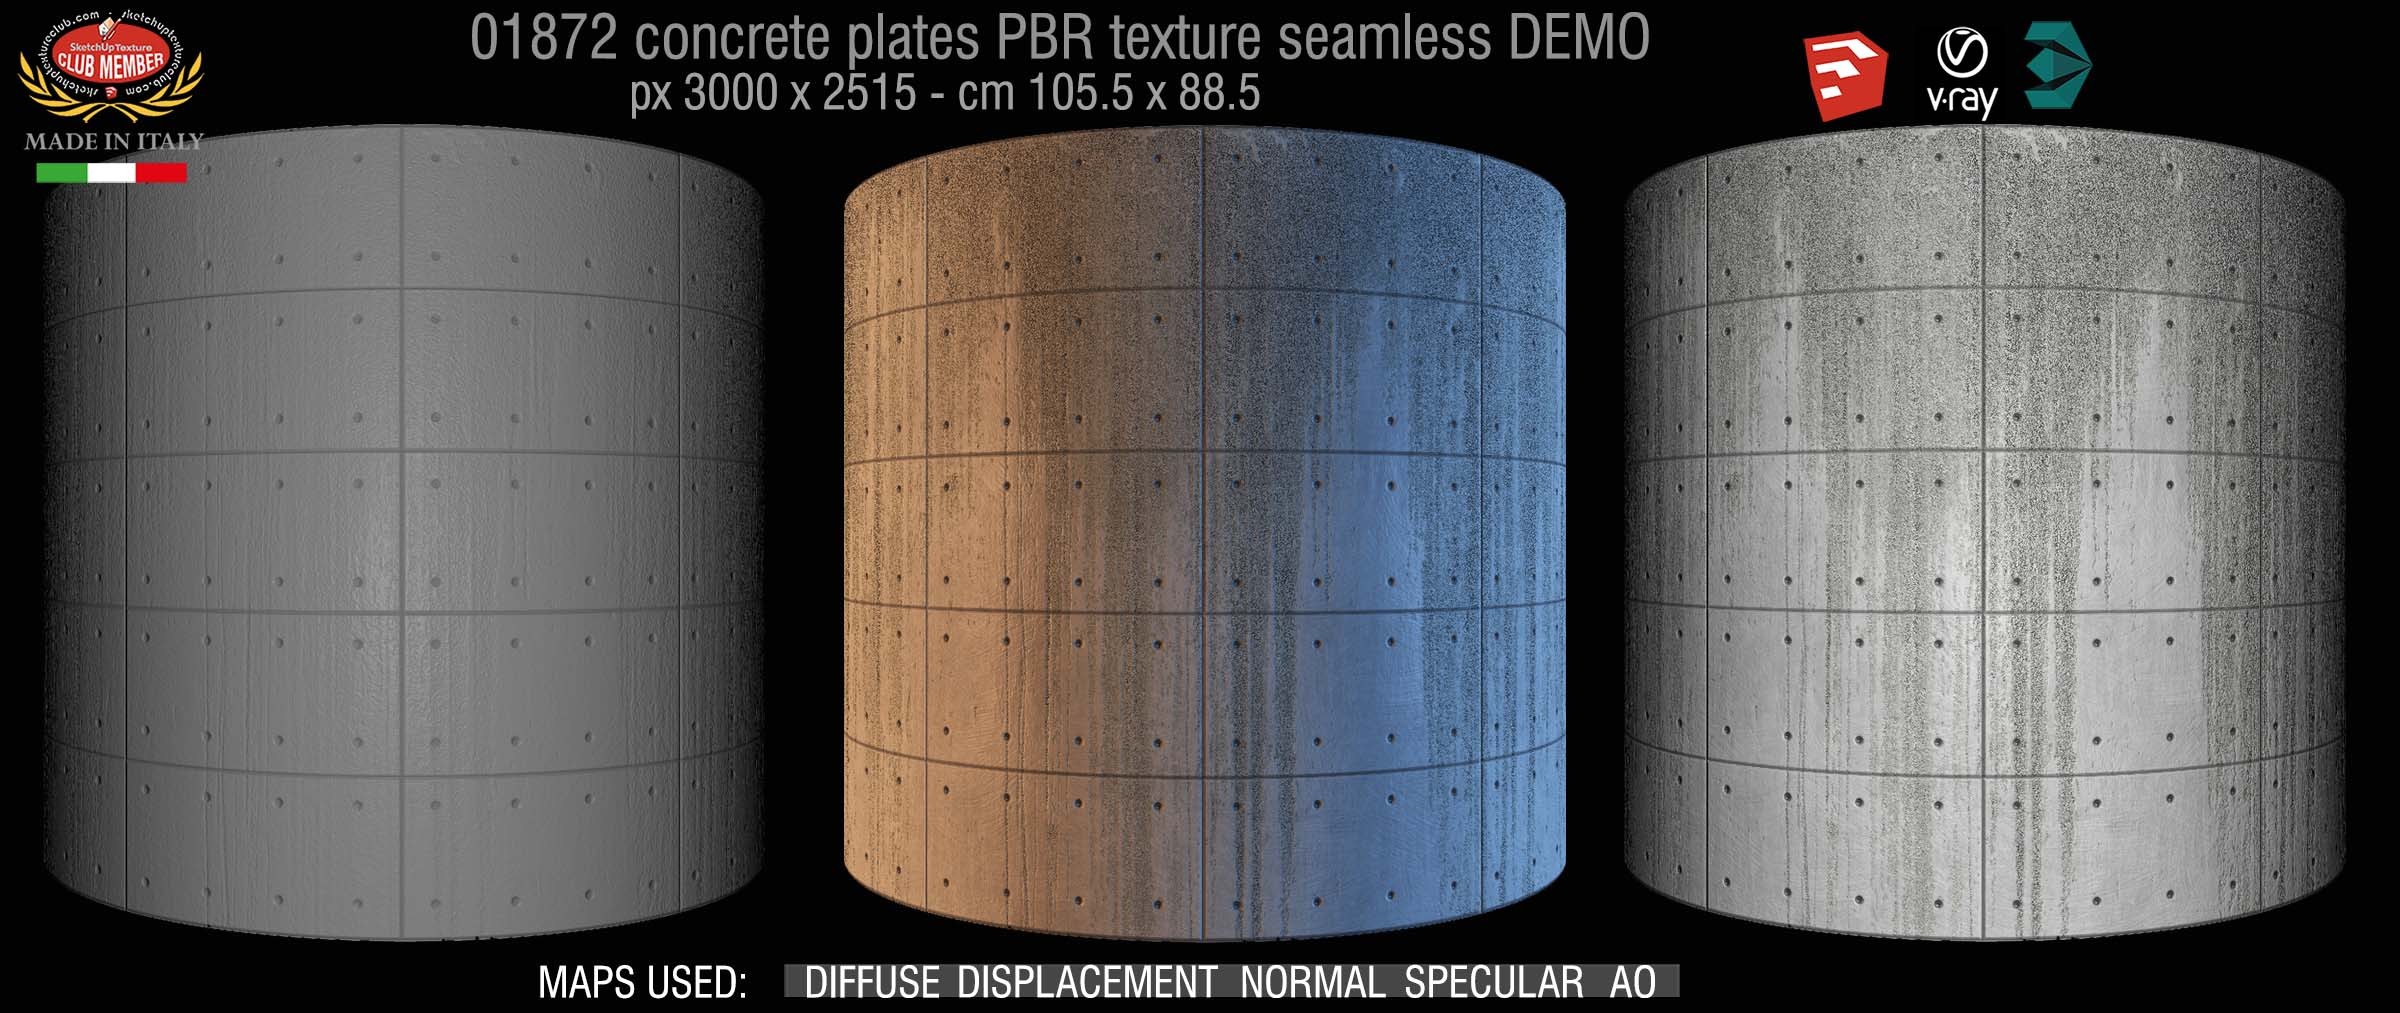 01872 Tadao Ando concrete plates PBR texture seamless DEMO